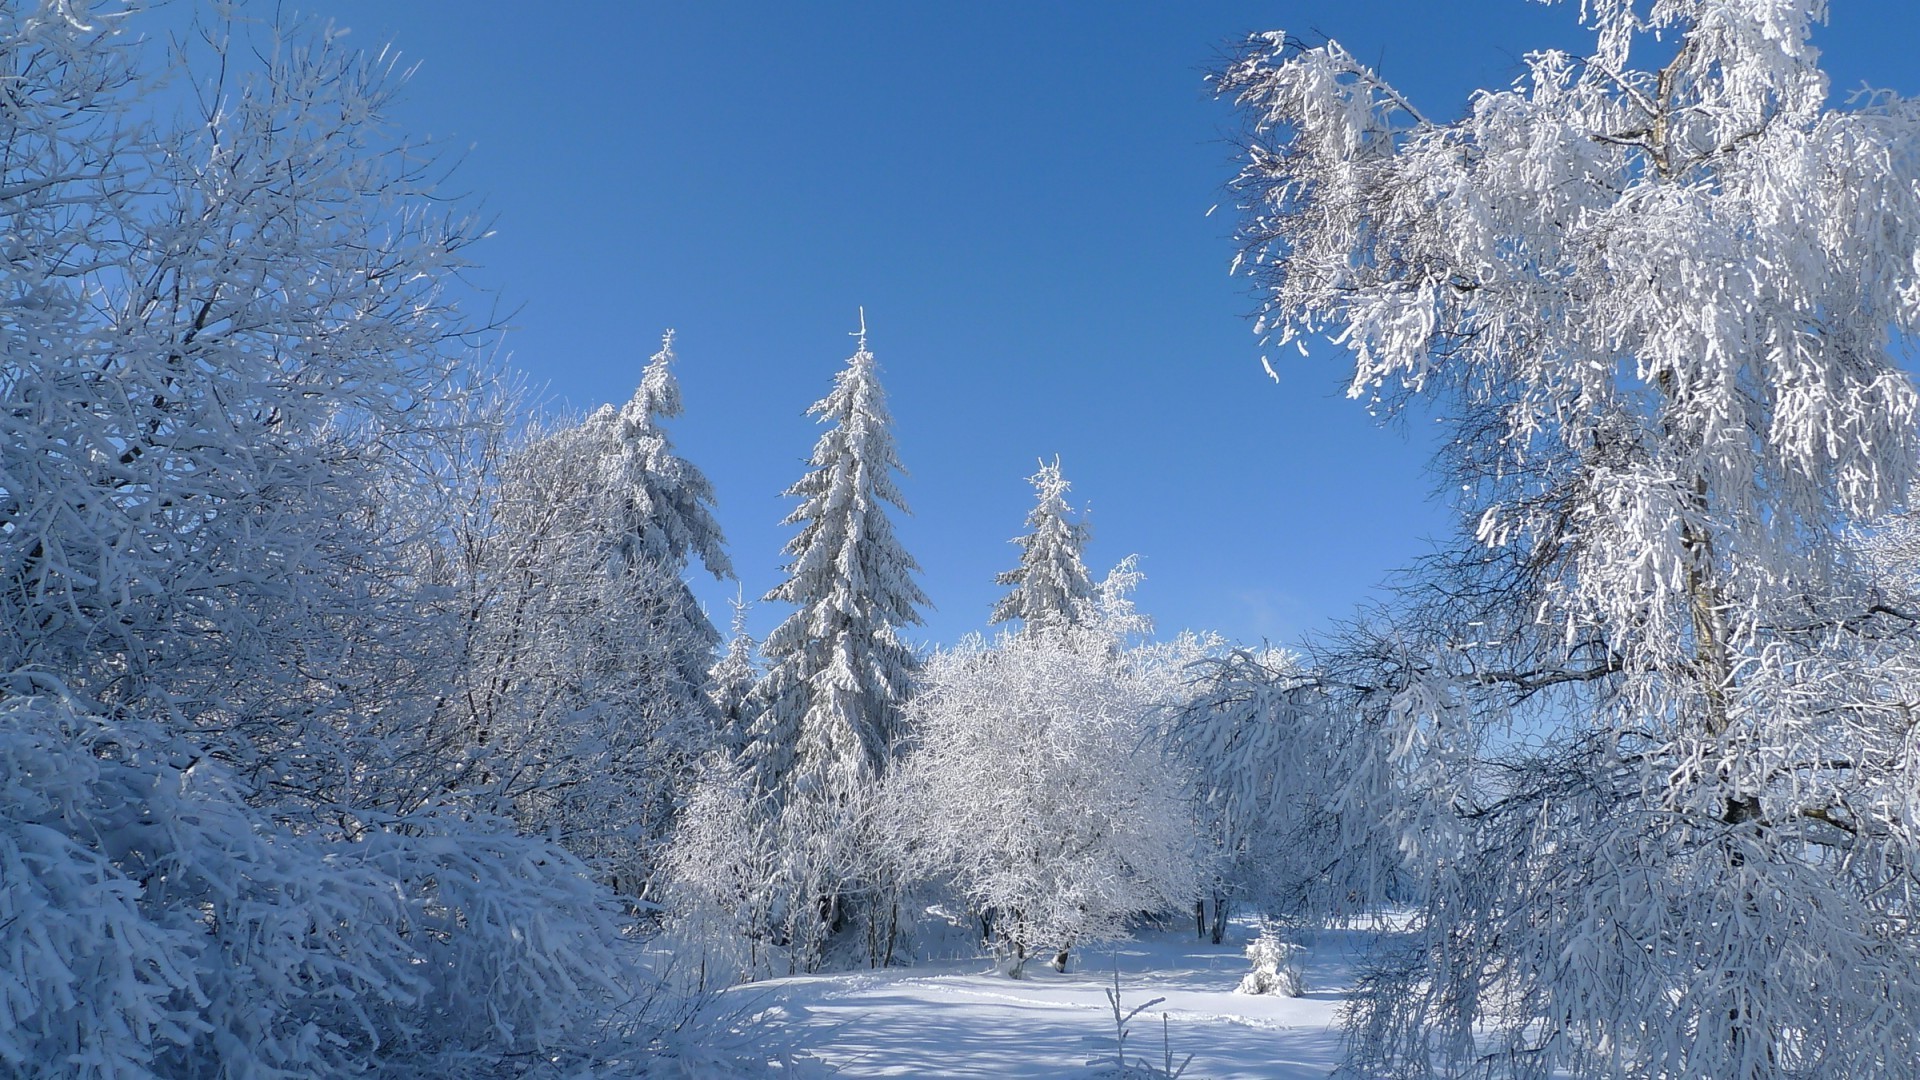 зима снег холодная мороз древесины замороженные лед дерево морозный сезон снежное погода живописный пейзаж ледяной горы холодок